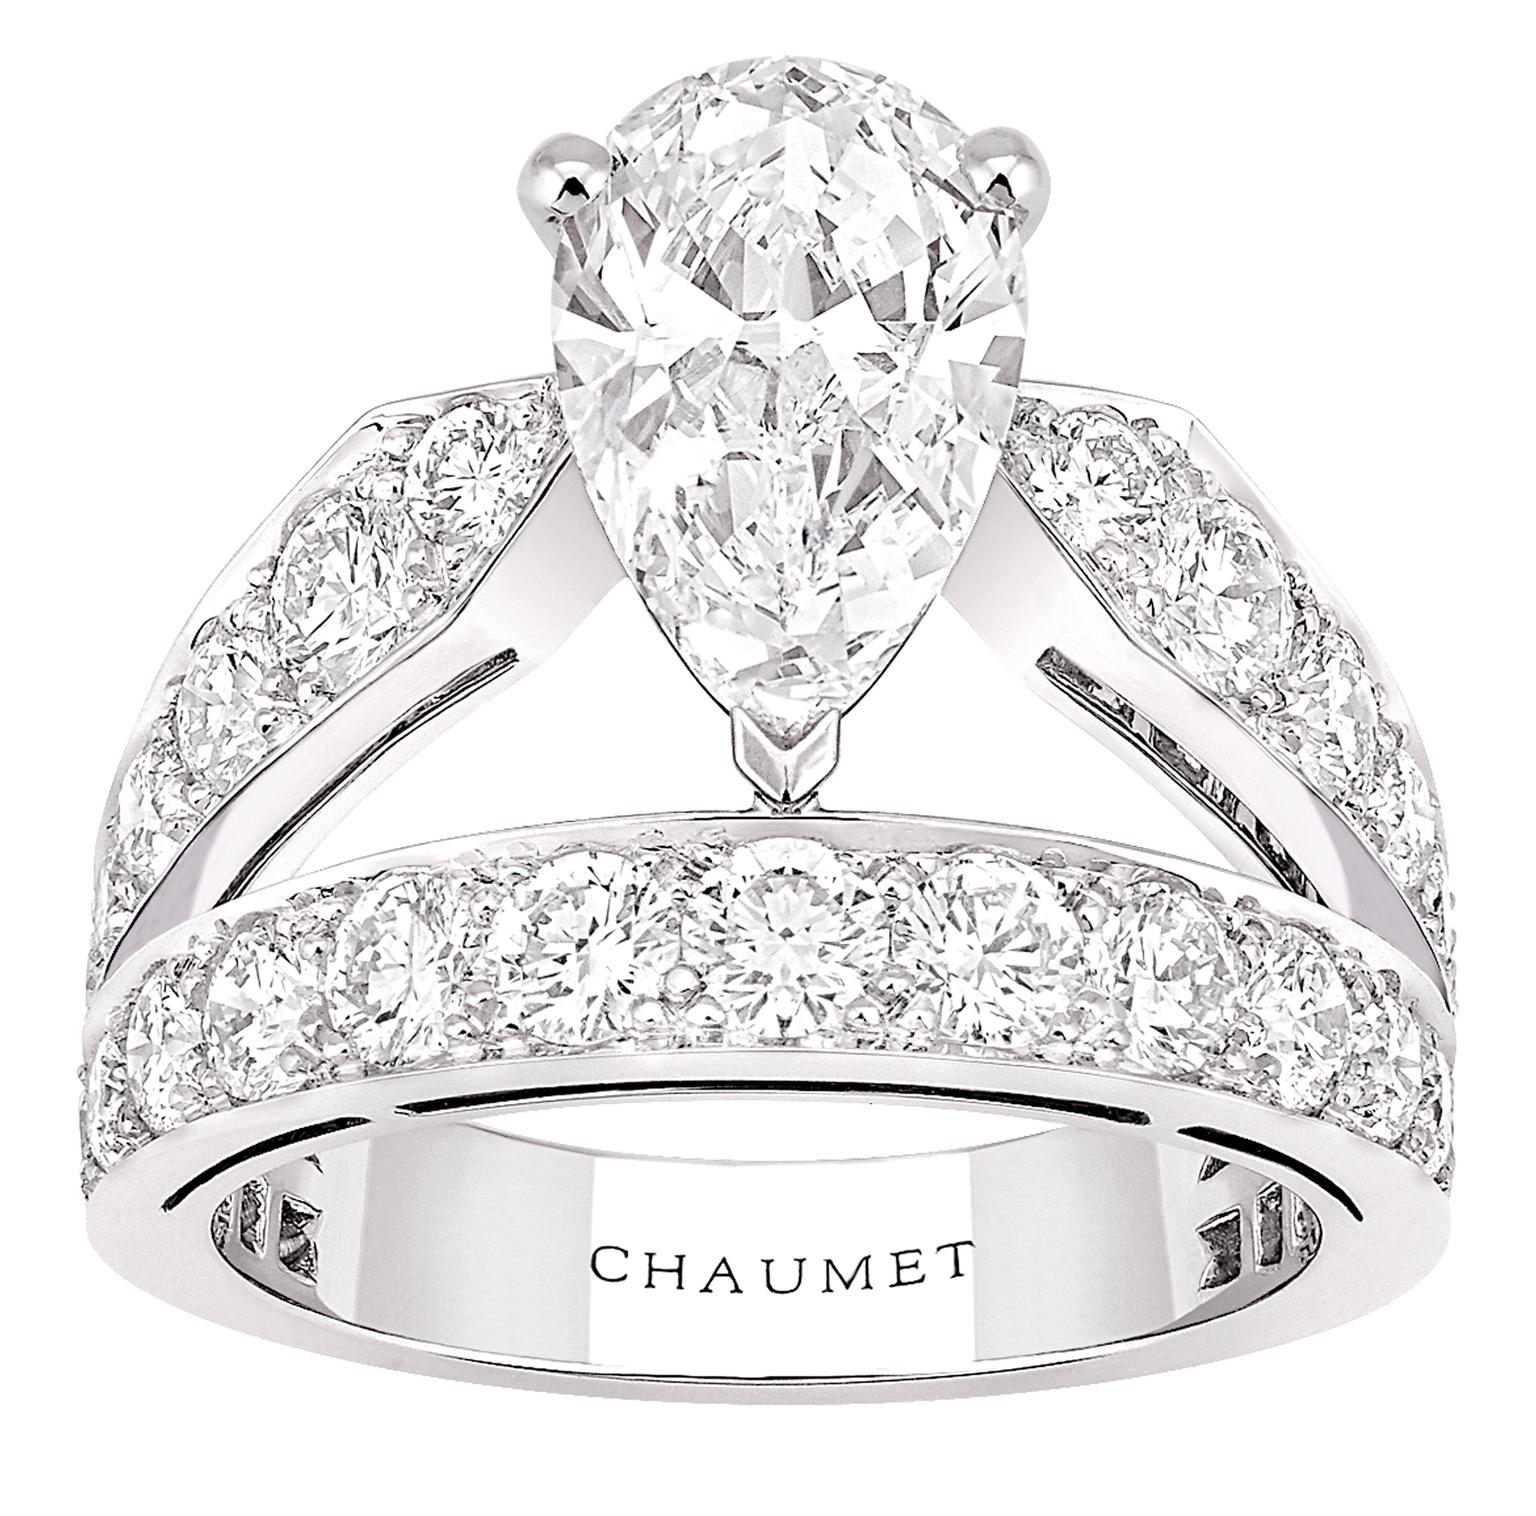 Joséphine Aigrette impériale tiara Platinum - 082911 - Chaumet